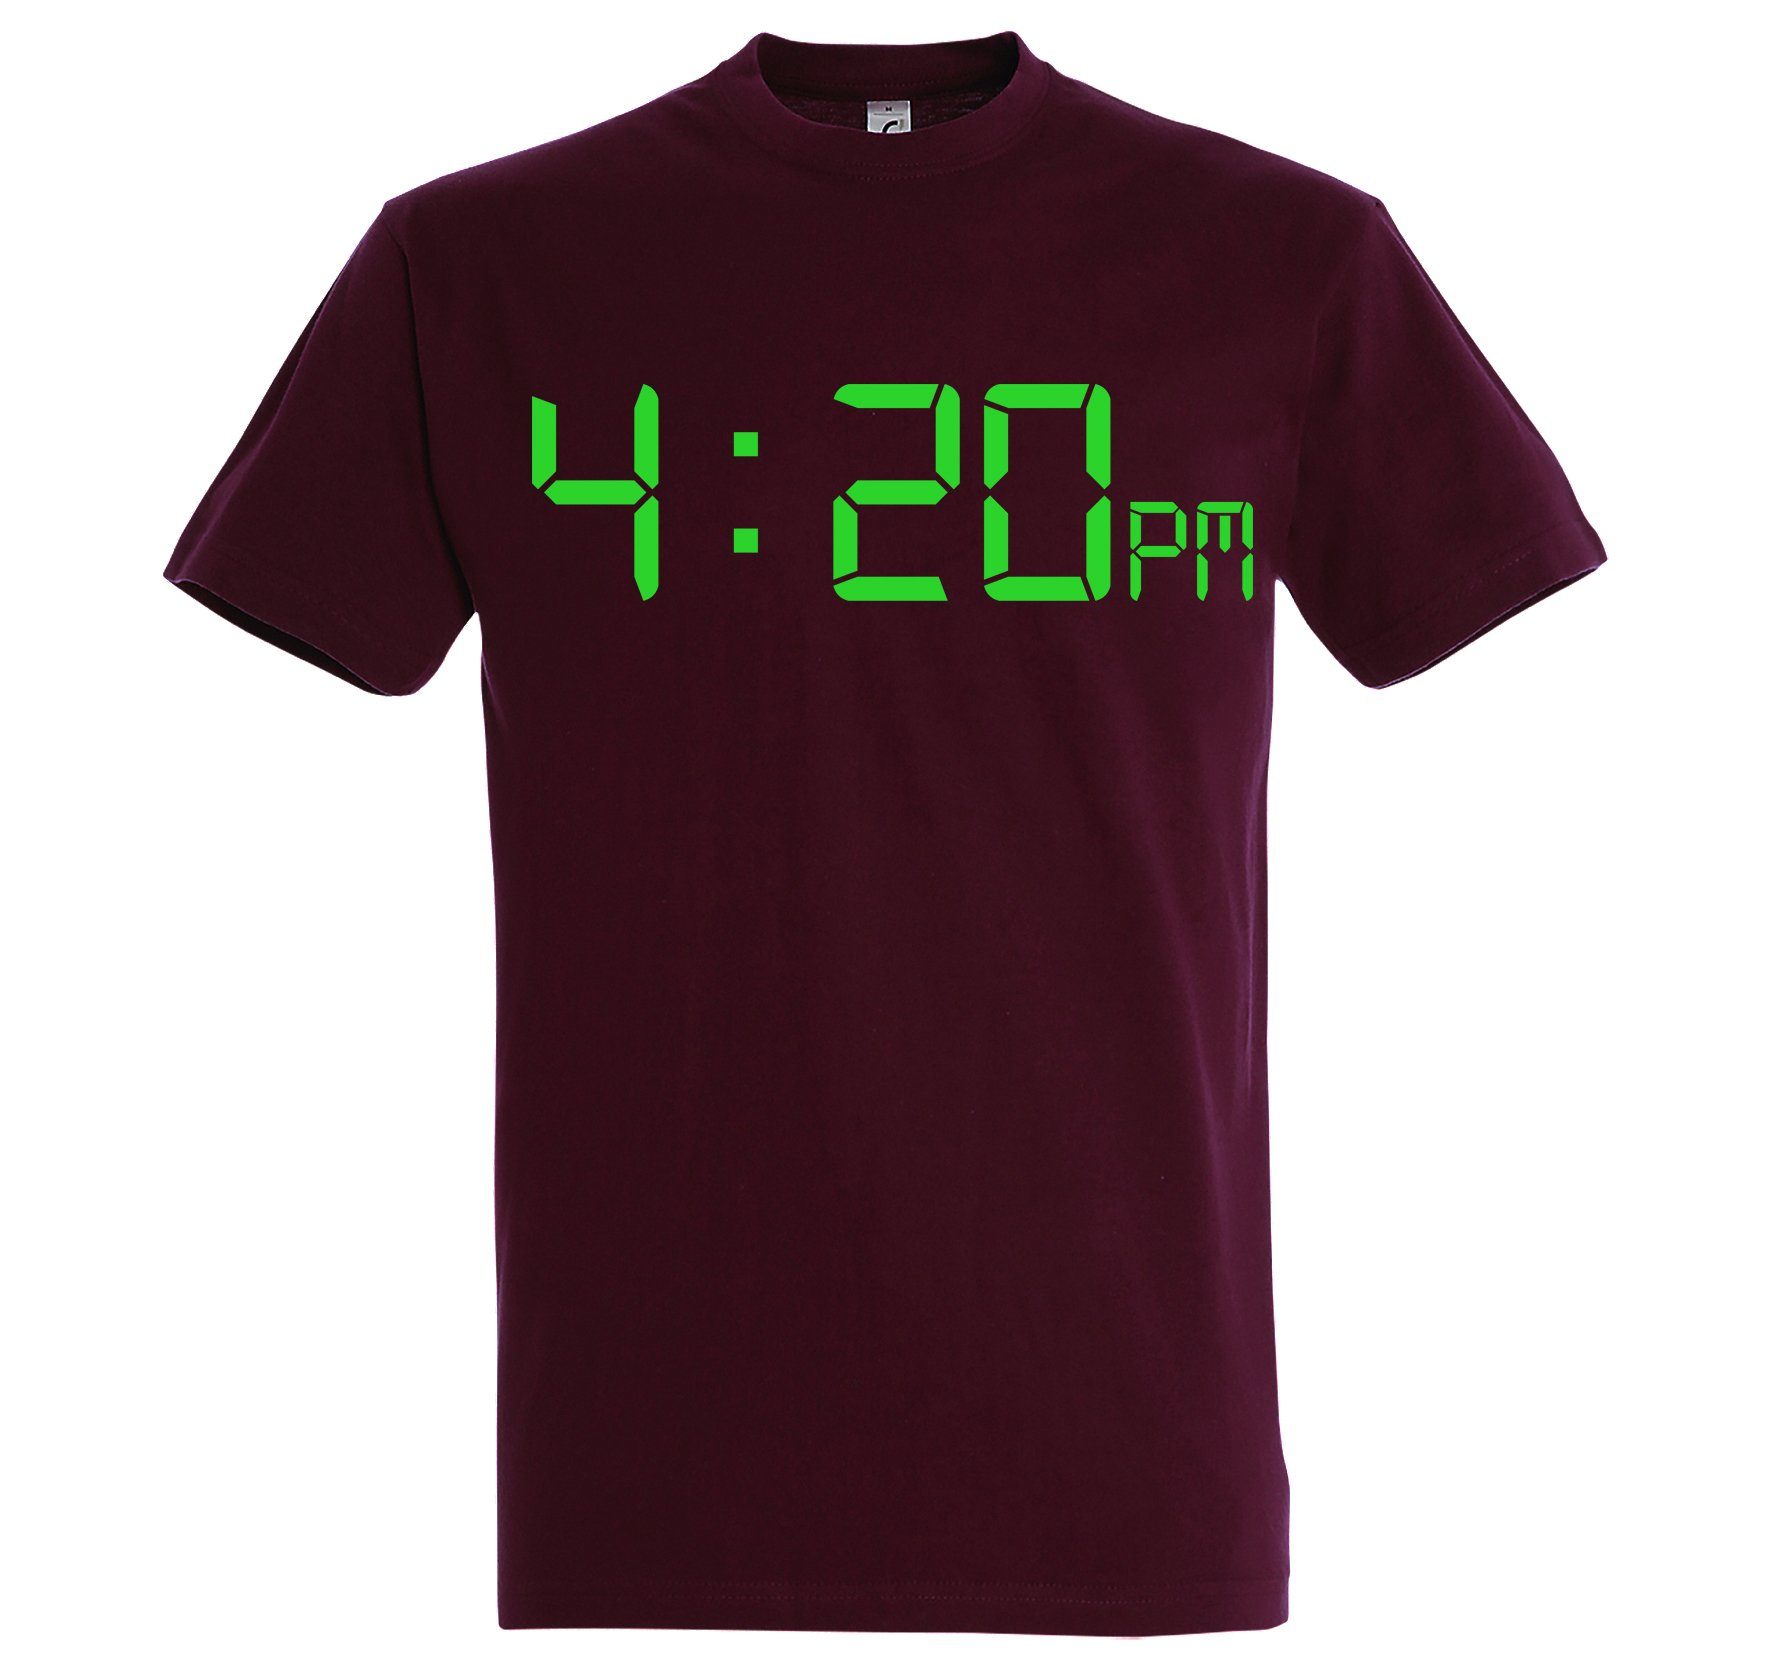 mit Frontprint 4:20 T-Shirt Youth T-Shirt Burgundy Herren Designz lustigem